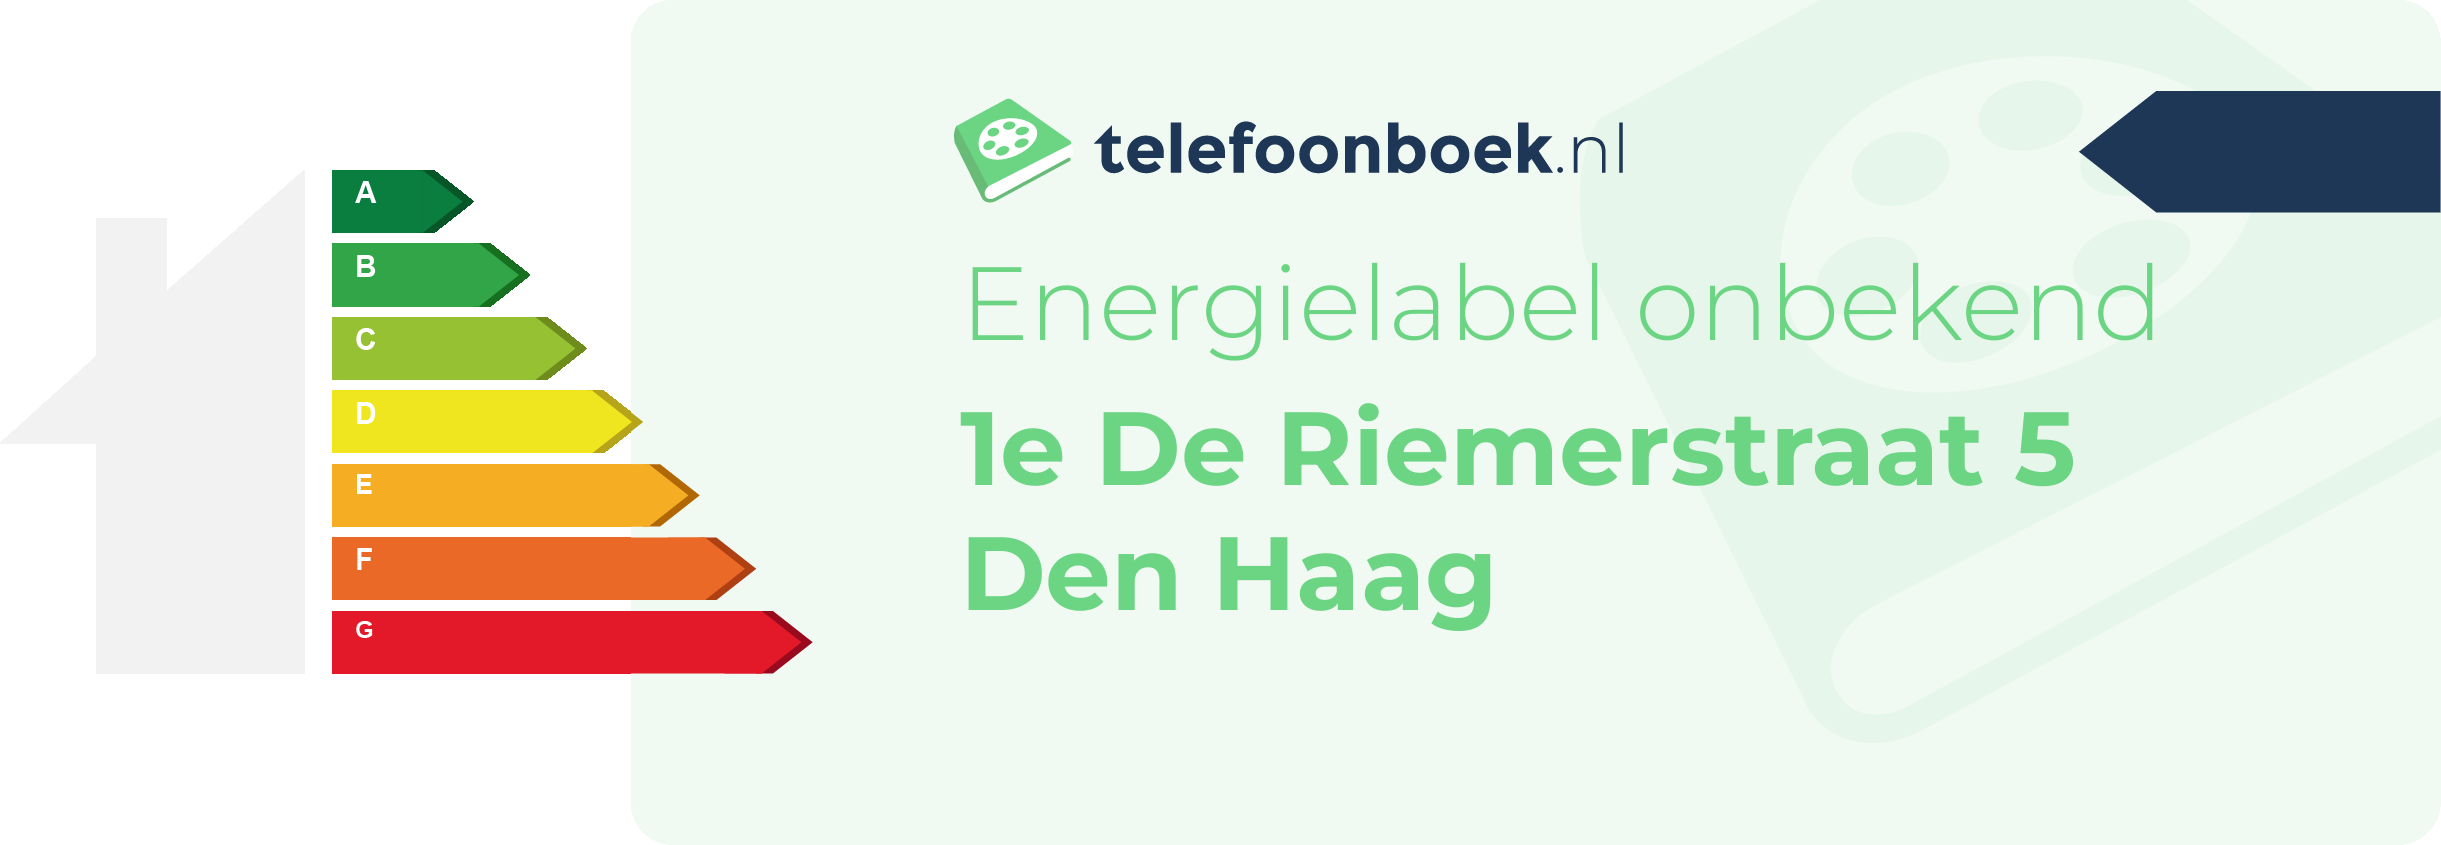 Energielabel 1e De Riemerstraat 5 Den Haag